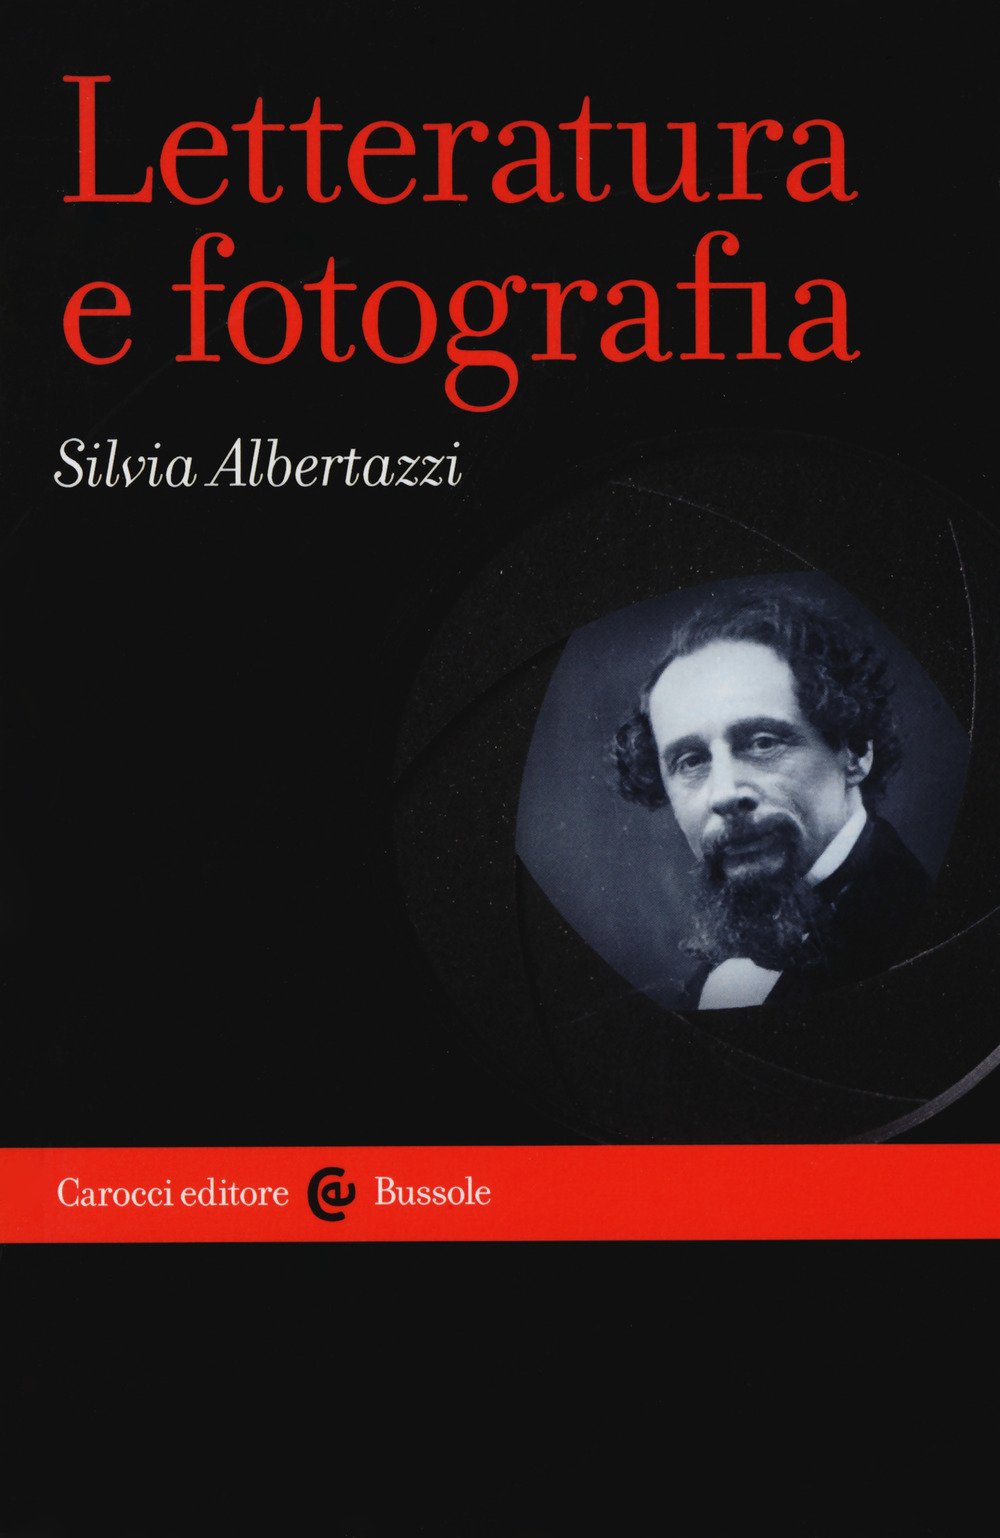   Copertina del volume Letteratura e fotografia